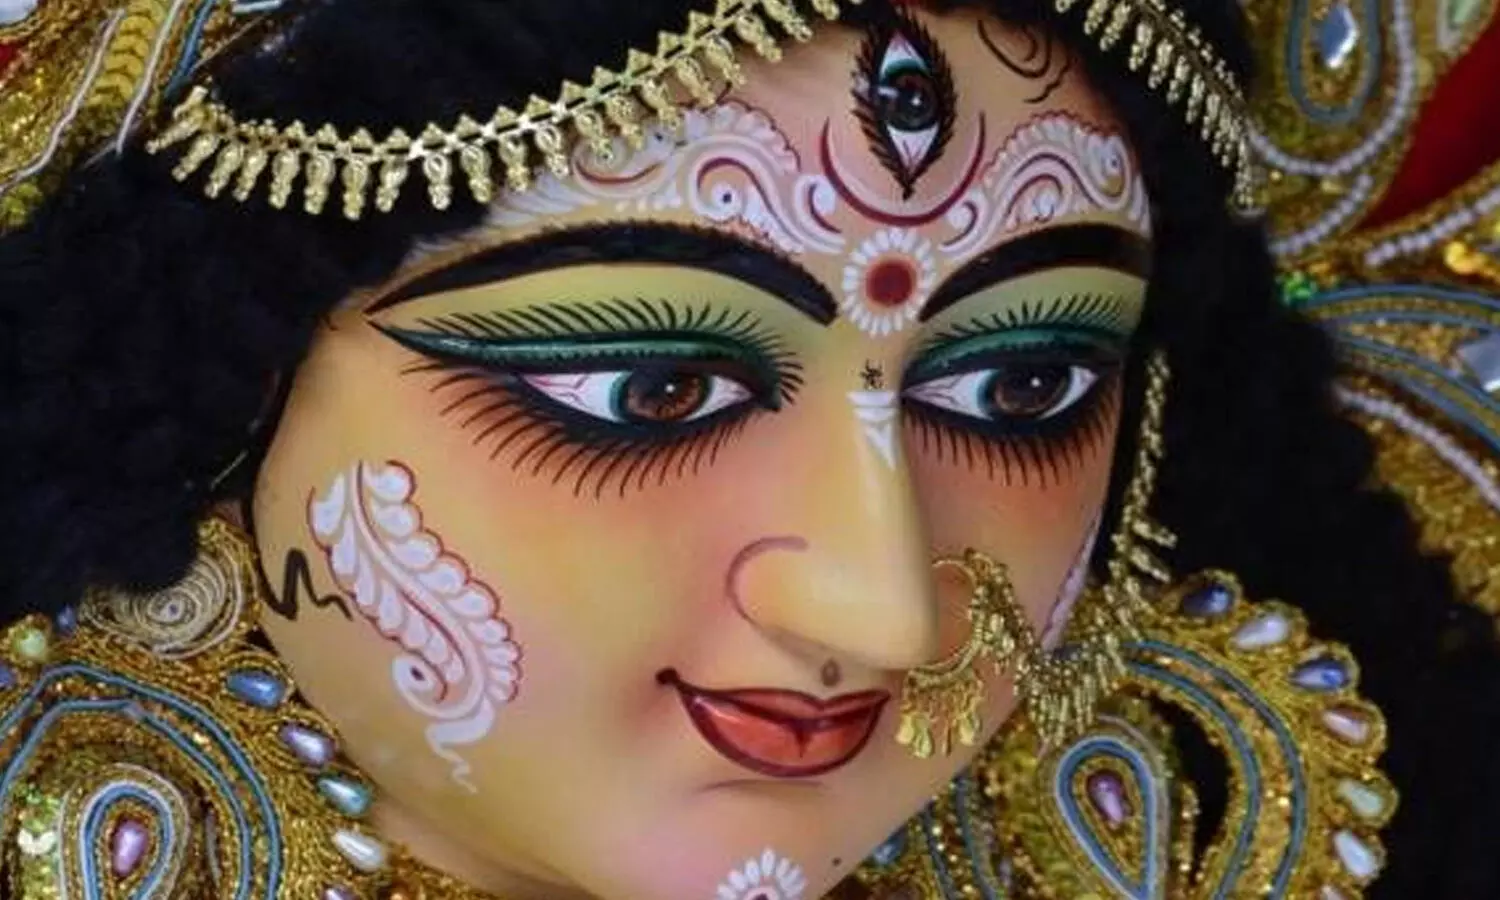 मांं दुर्गा के इस स्वरूप की उपासना से भगवान शिव बने थे अर्द्धनारीश्वर, जानें इनकी महिमा